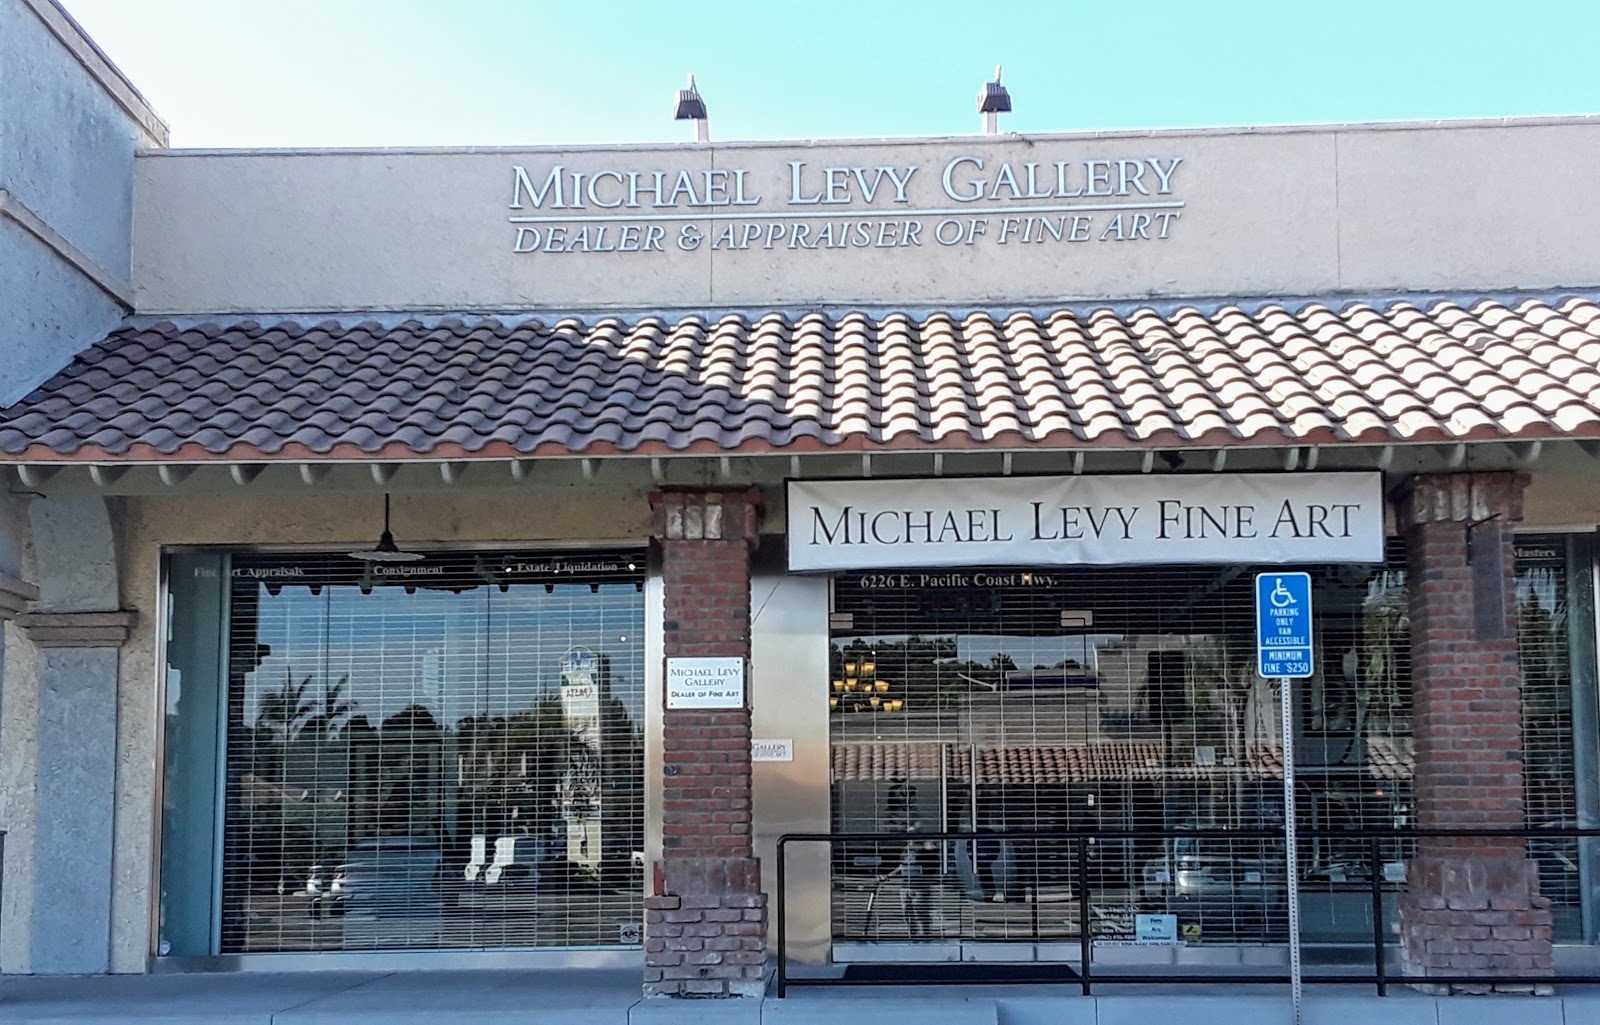 Member Michael Levy Gallery in Long Beach CA